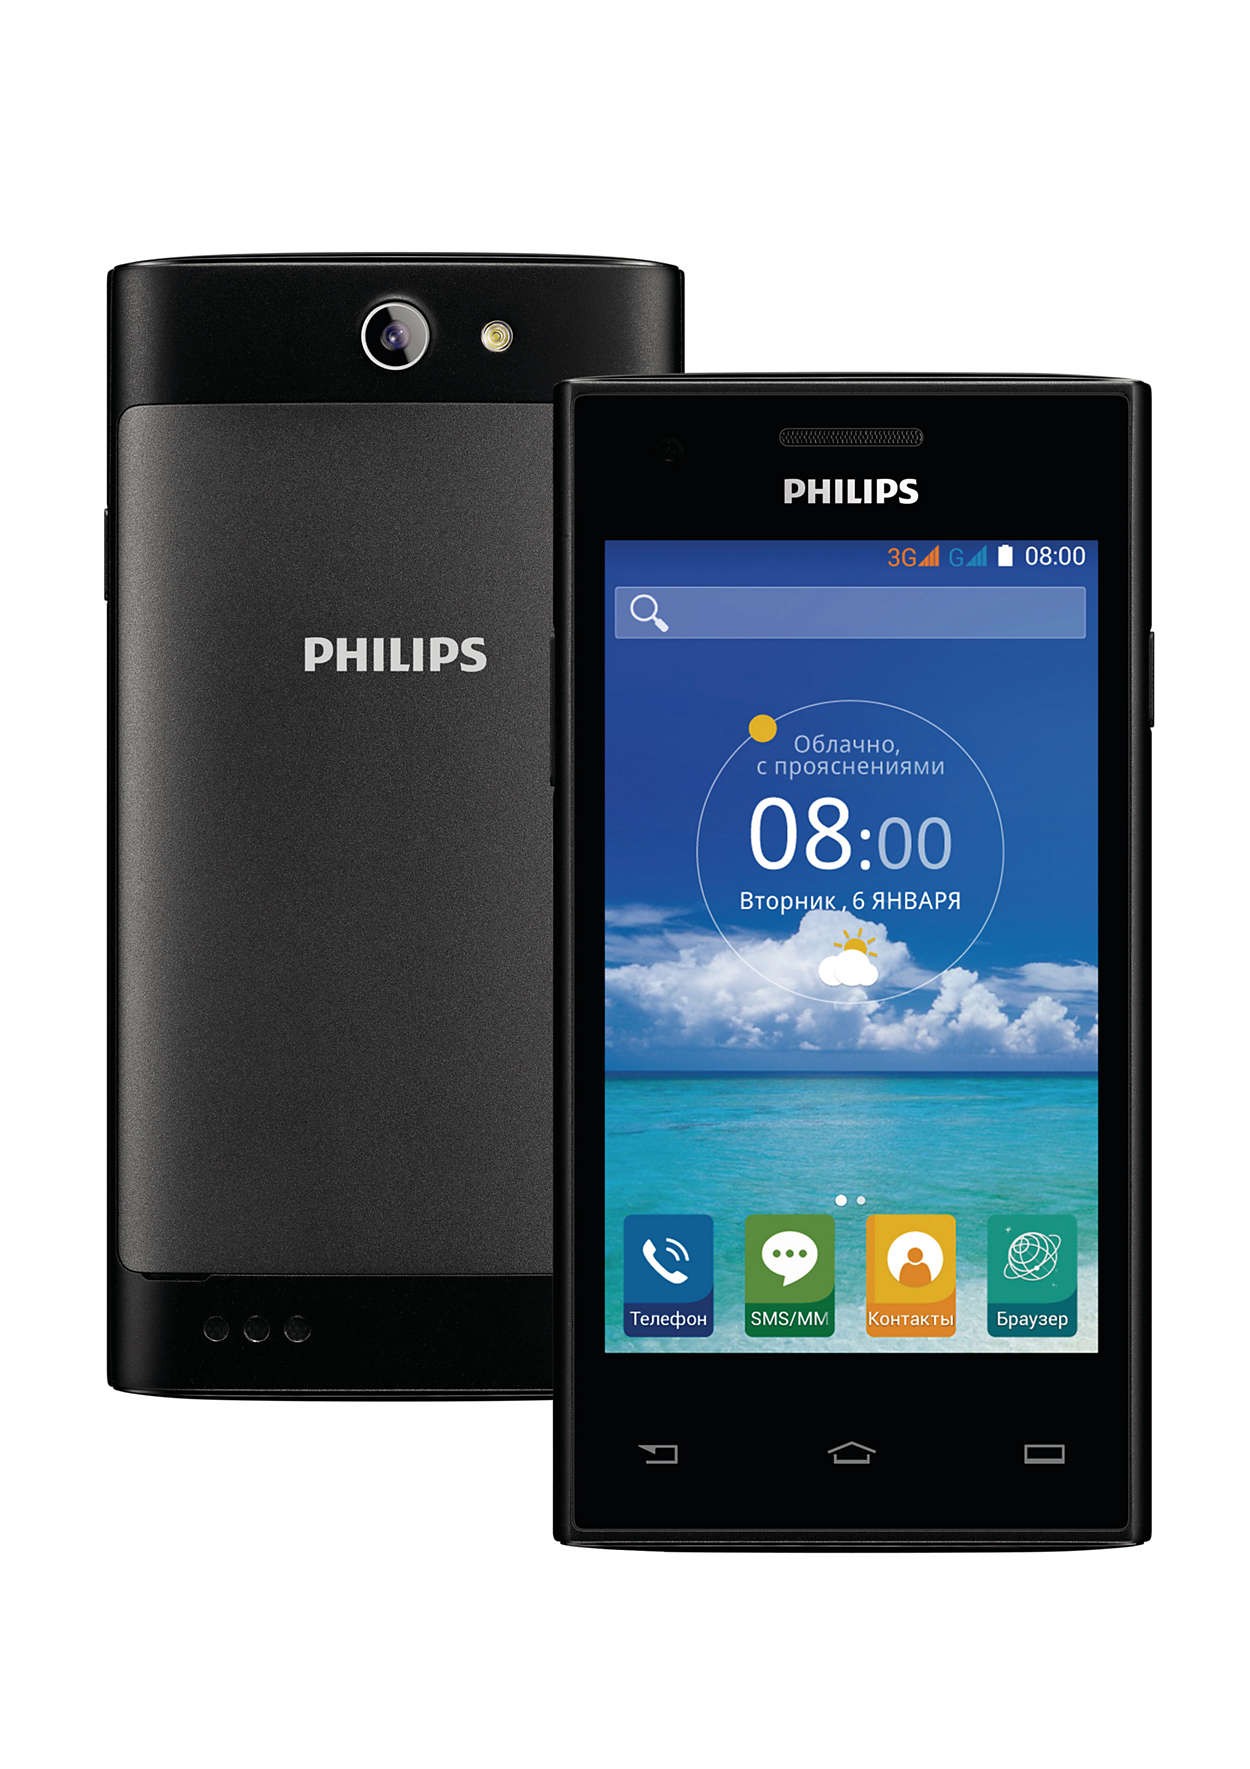 Филипс с андроидом. Смартфон Philips s309. Philips Xenium s309. Филипс с 309. Philips s309 Black.